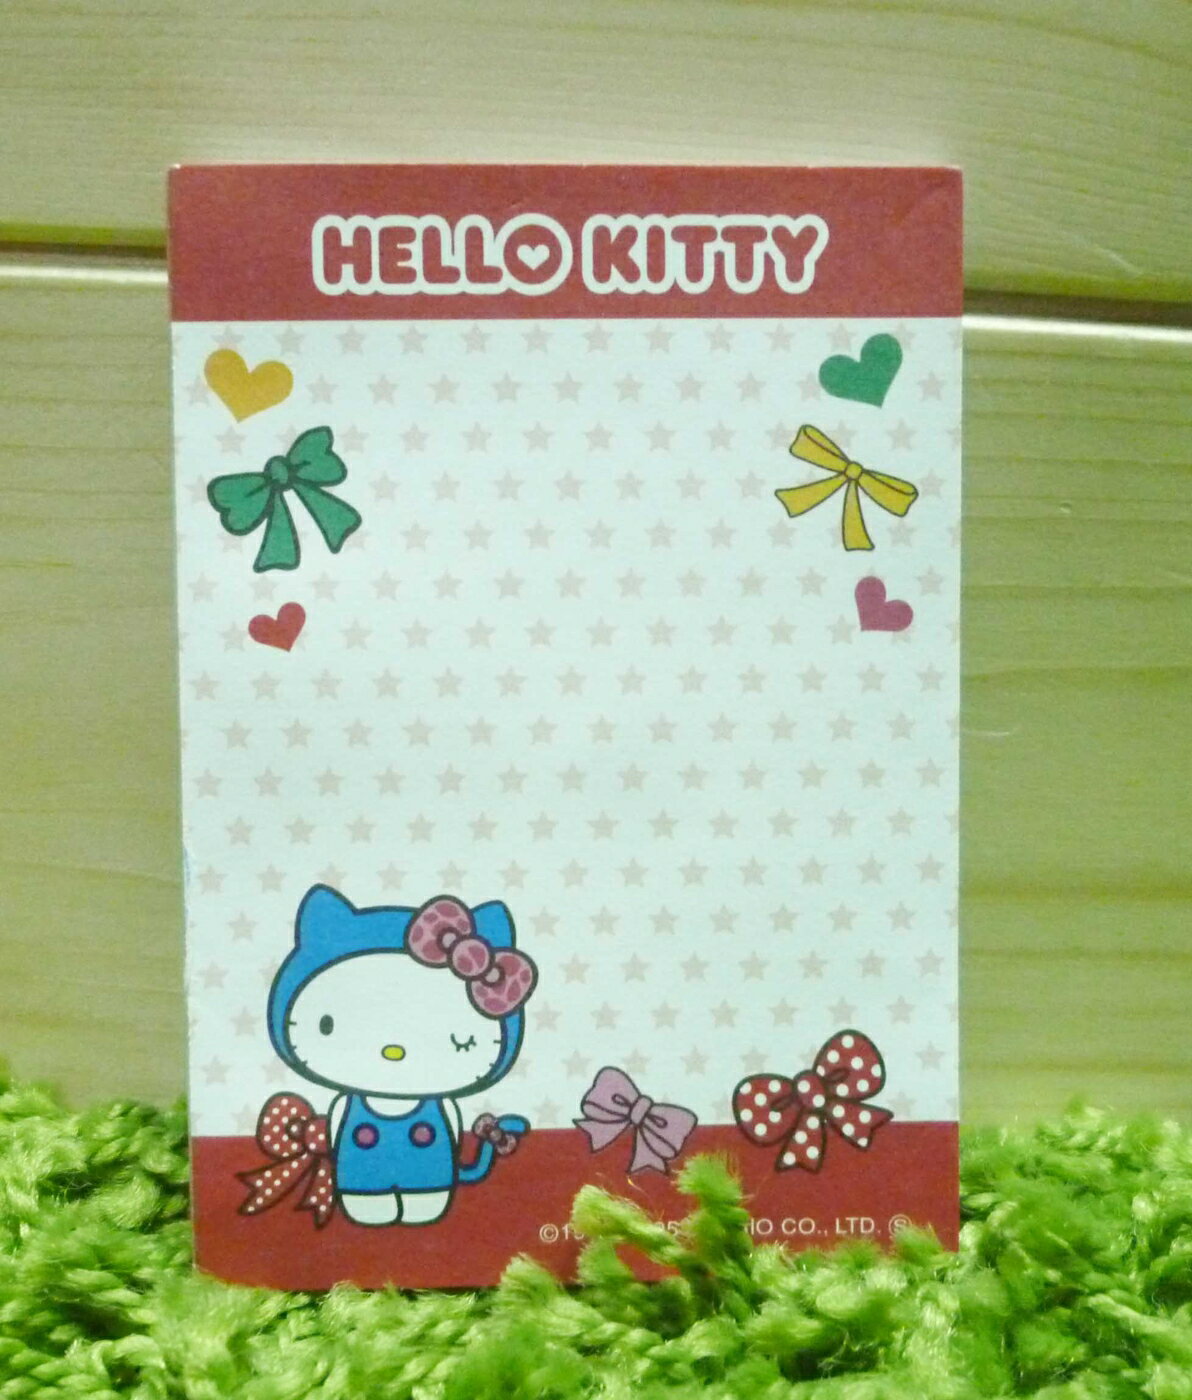 【震撼精品百貨】Hello Kitty 凱蒂貓 便條 蝴蝶結【共1款】 震撼日式精品百貨